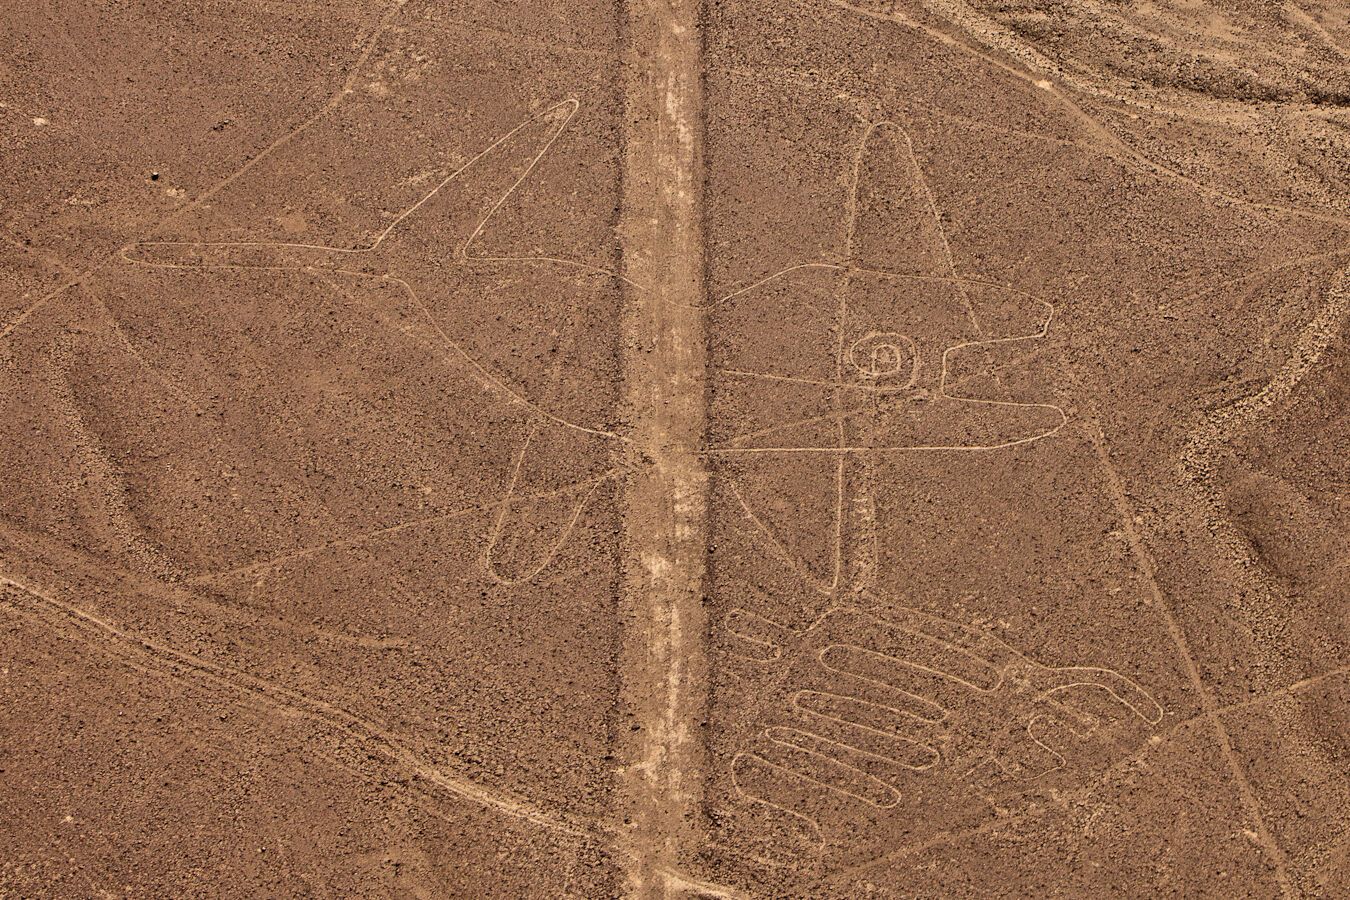 Рисунки Наска: таинственные геоглифы в пустыне Перу